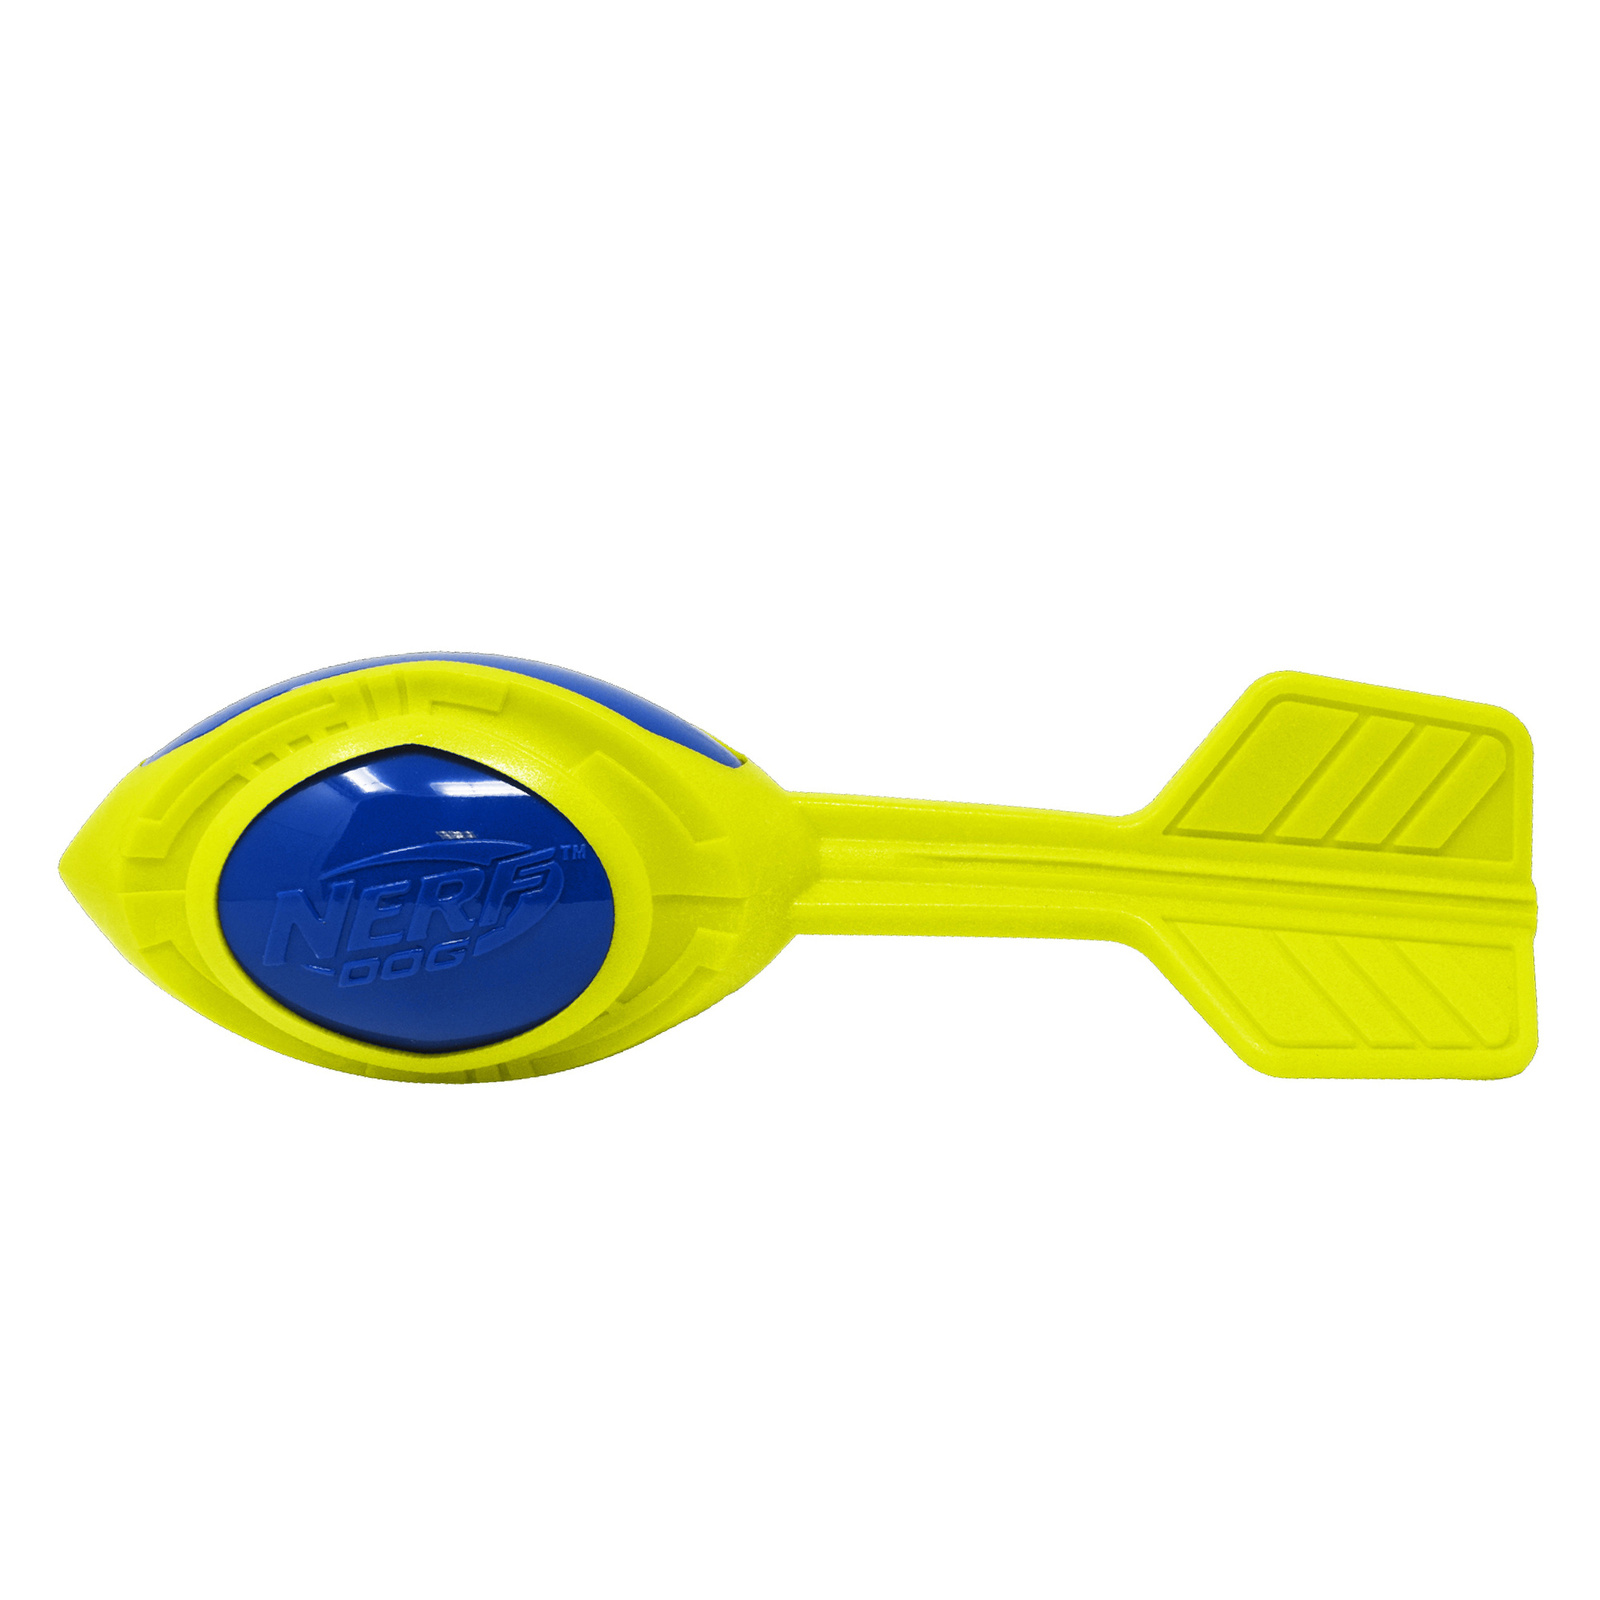 Nerf Nerf снаряд из вспененной резины и термопластичной резины, 30 см (серия Мегатон), (синий/зеленый) (290 г) nerf nerf мяч с шипами из термопластичной резины 6 см синий оранжевый 9 см